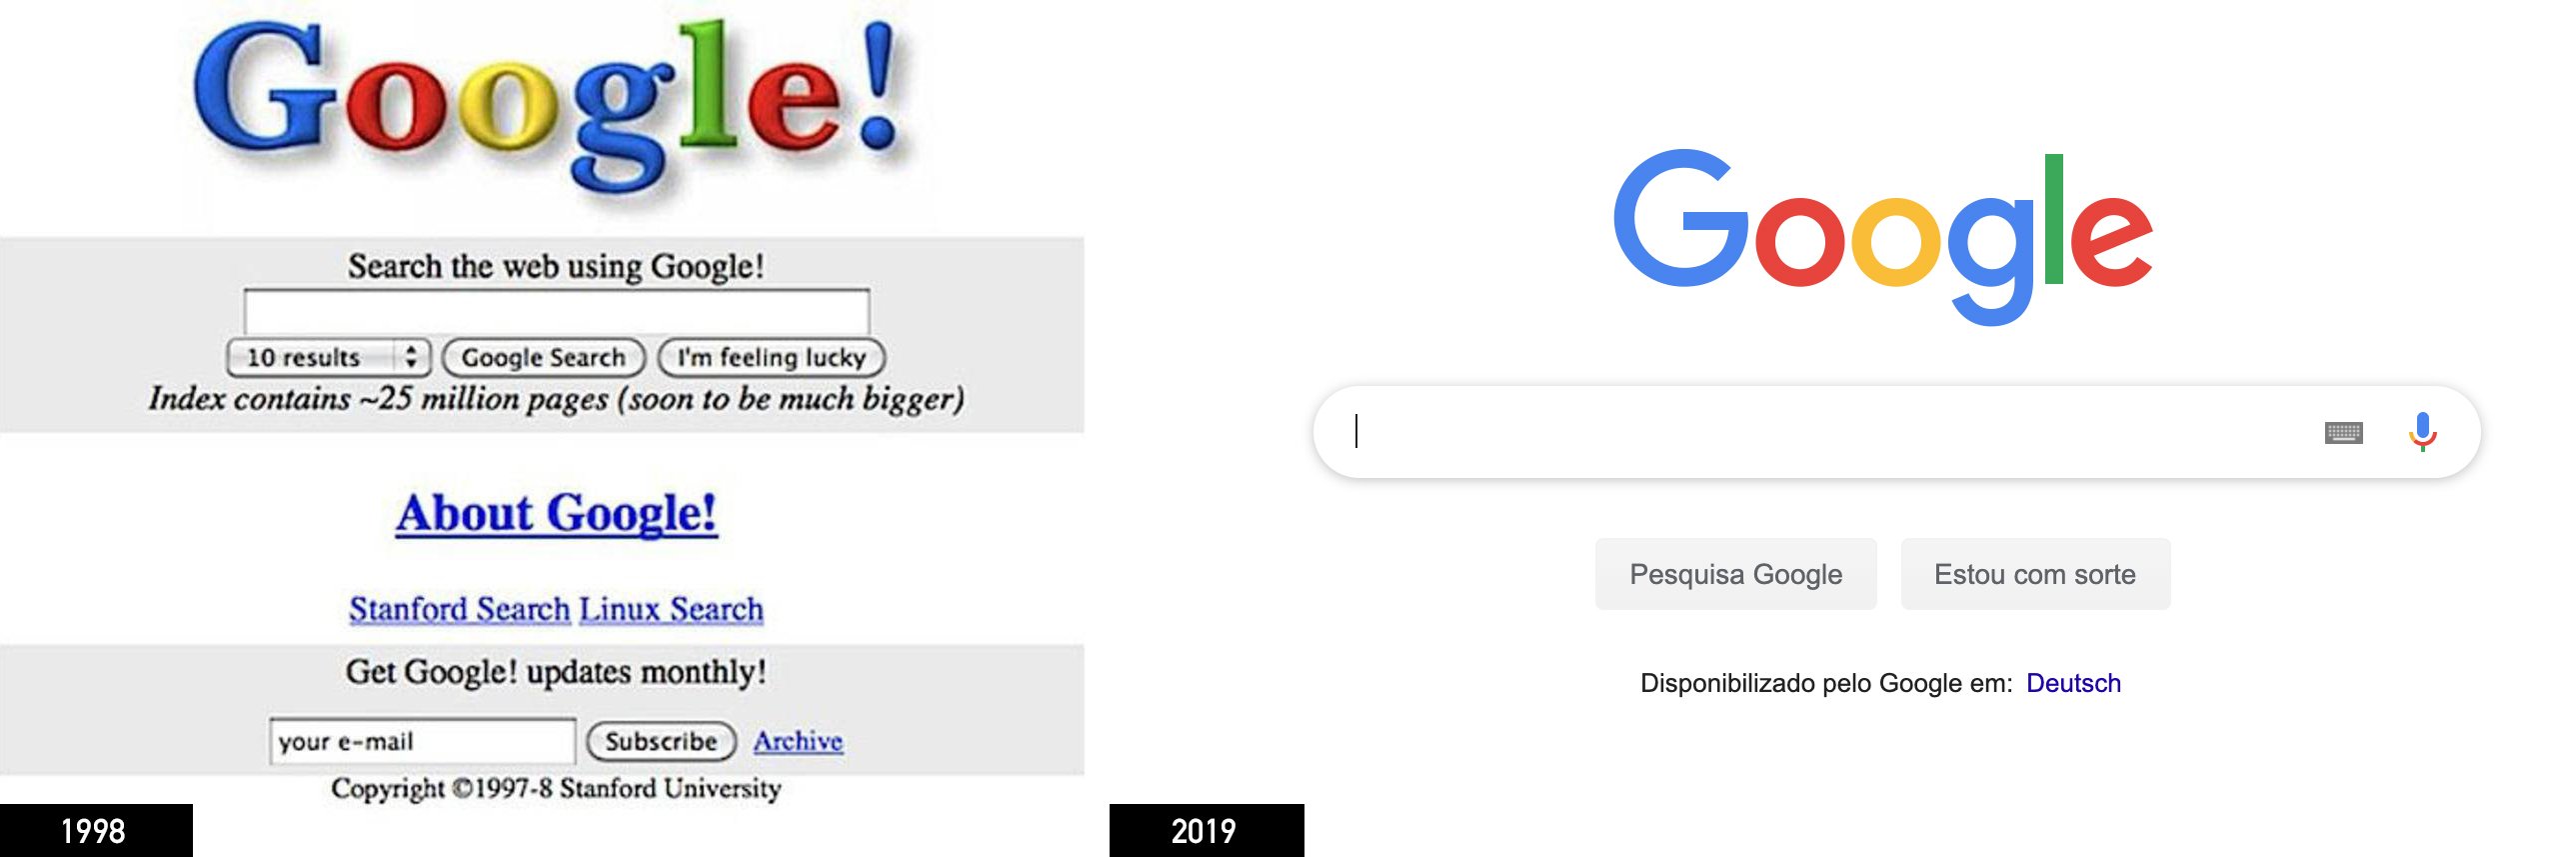 Google em 1998 e em 2019